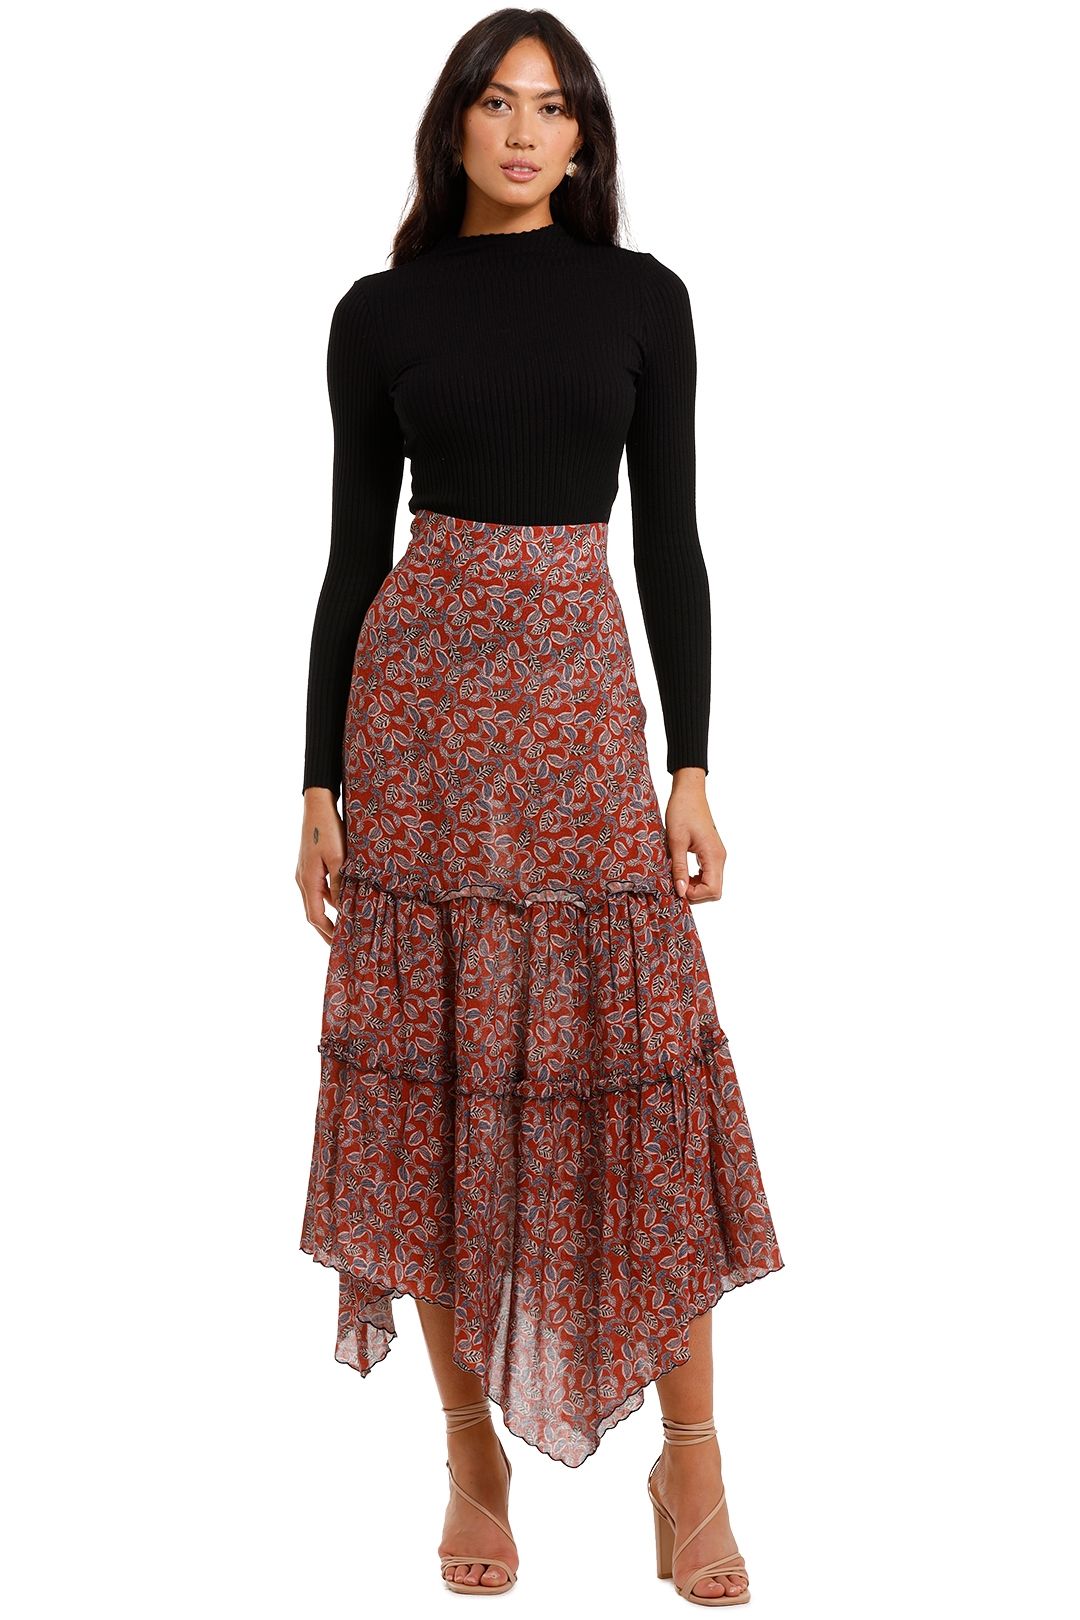 Morrison Valencia Skirt